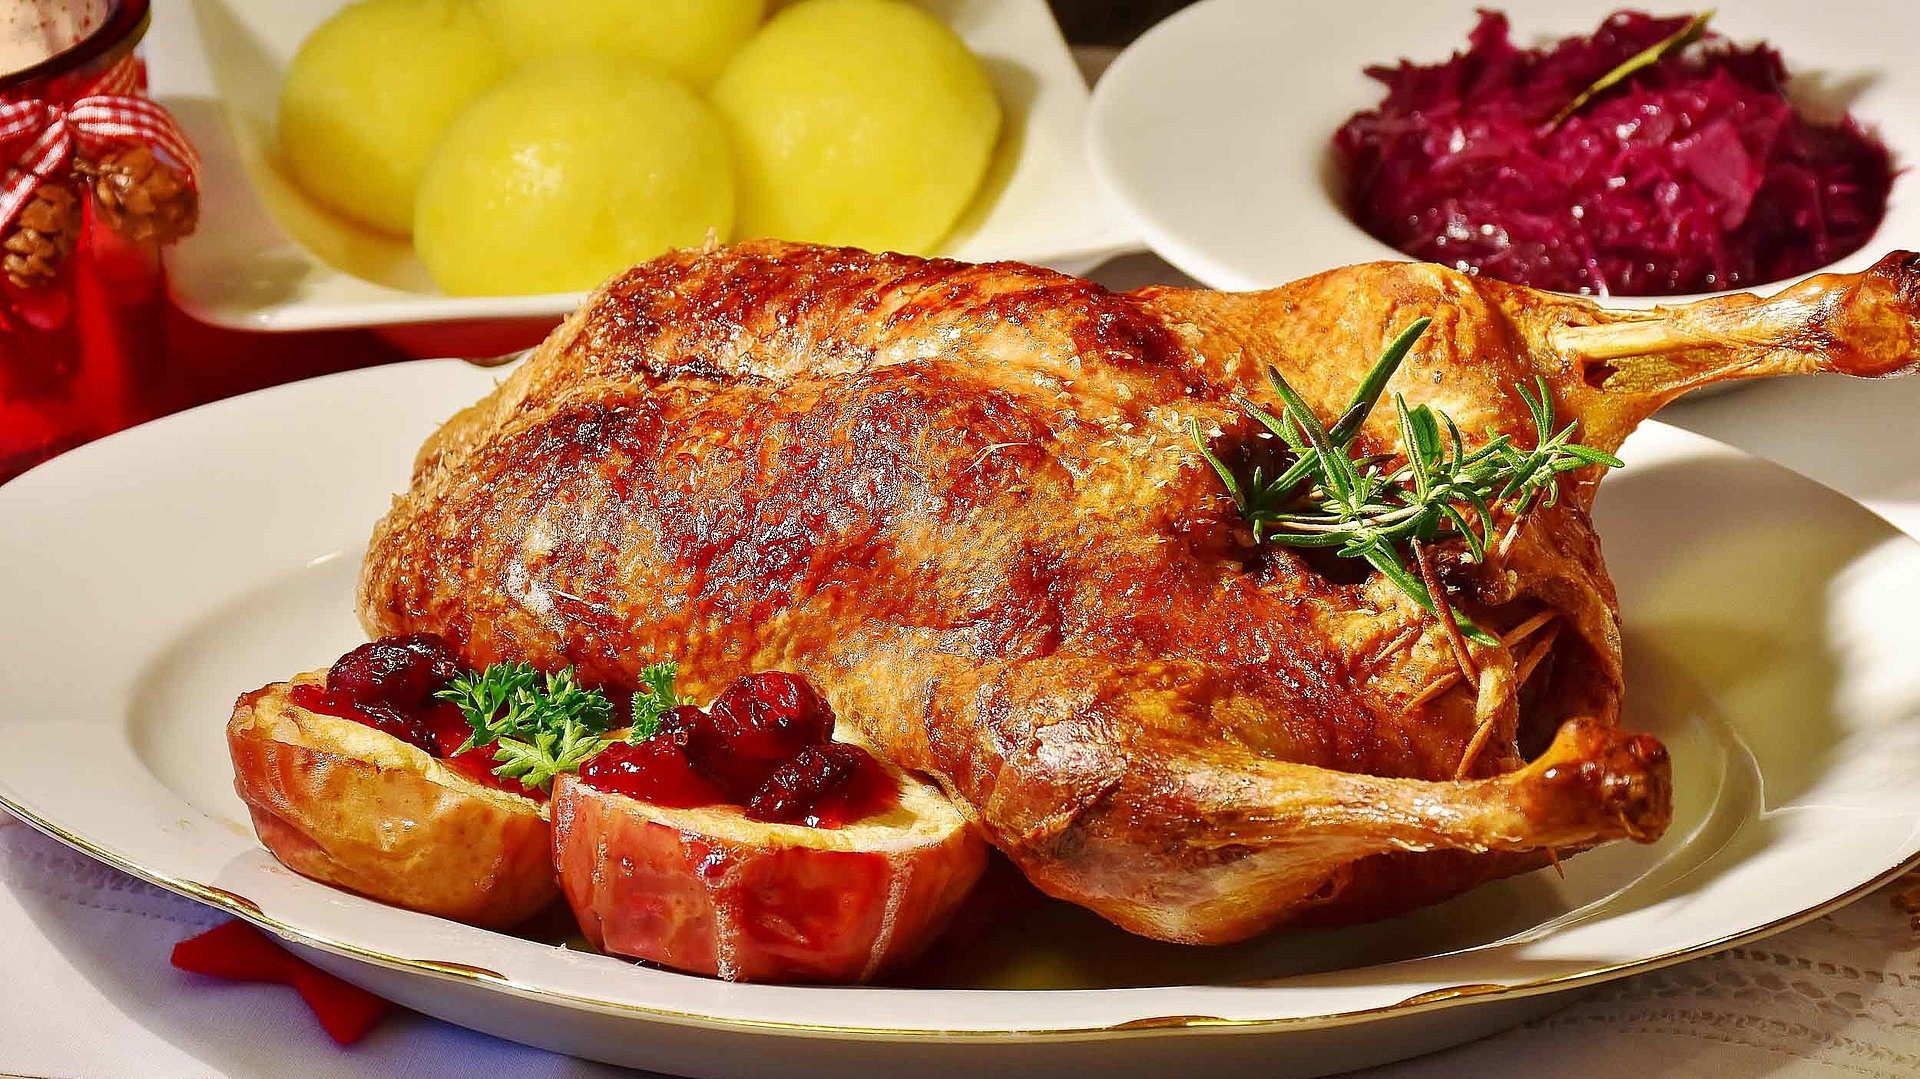 Gastronomie in Franken - Teller mit frischer Ente und separaten Tellern jeweils mit Knödeln und Rotkohl